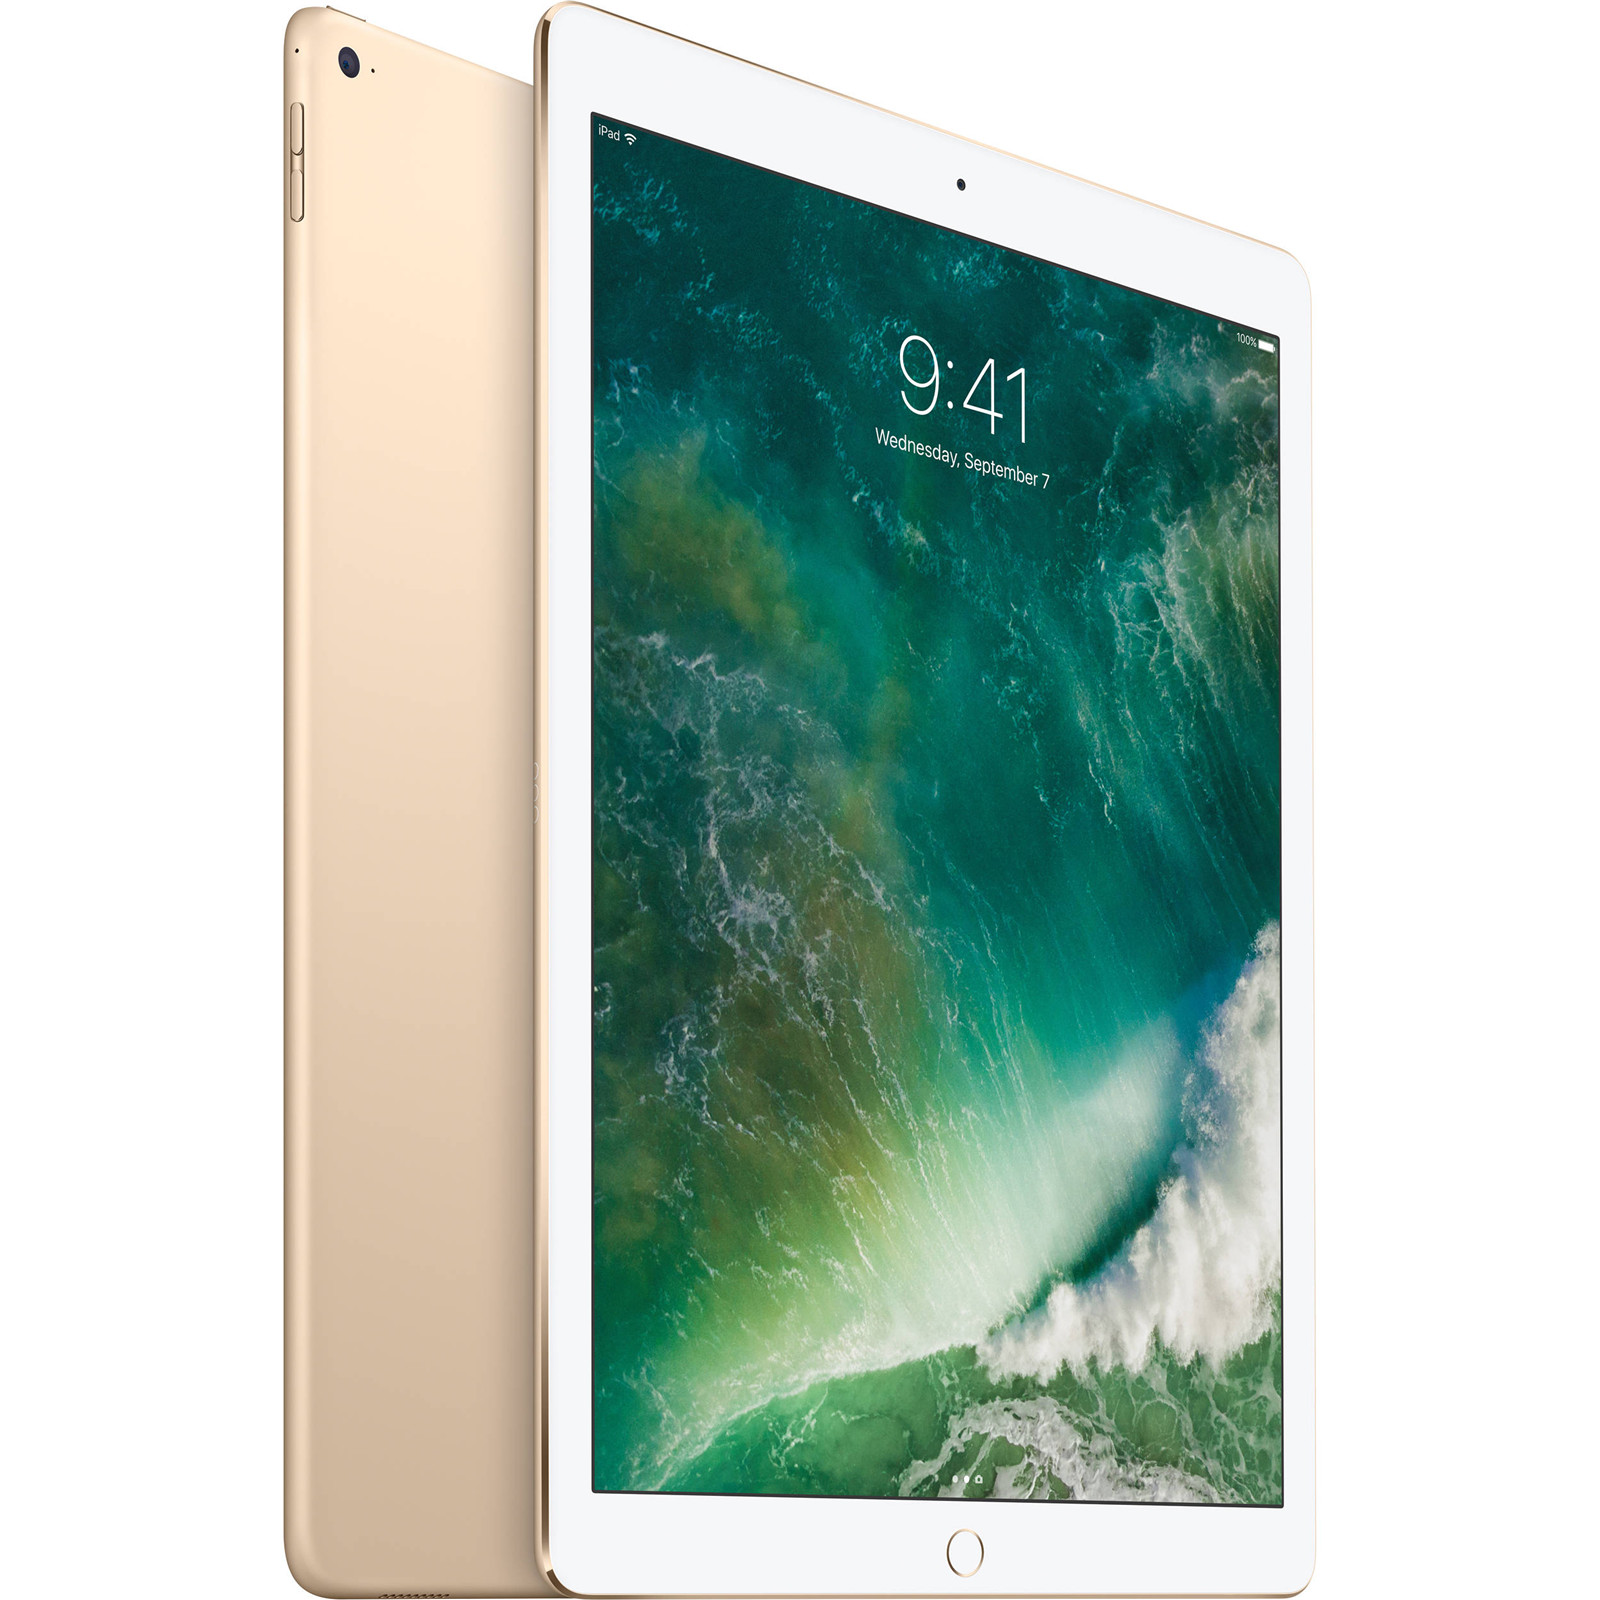 iPad Pro 12.9 Wi-Fi + LTE, 512gb, Gold 2017 (MPLL2)